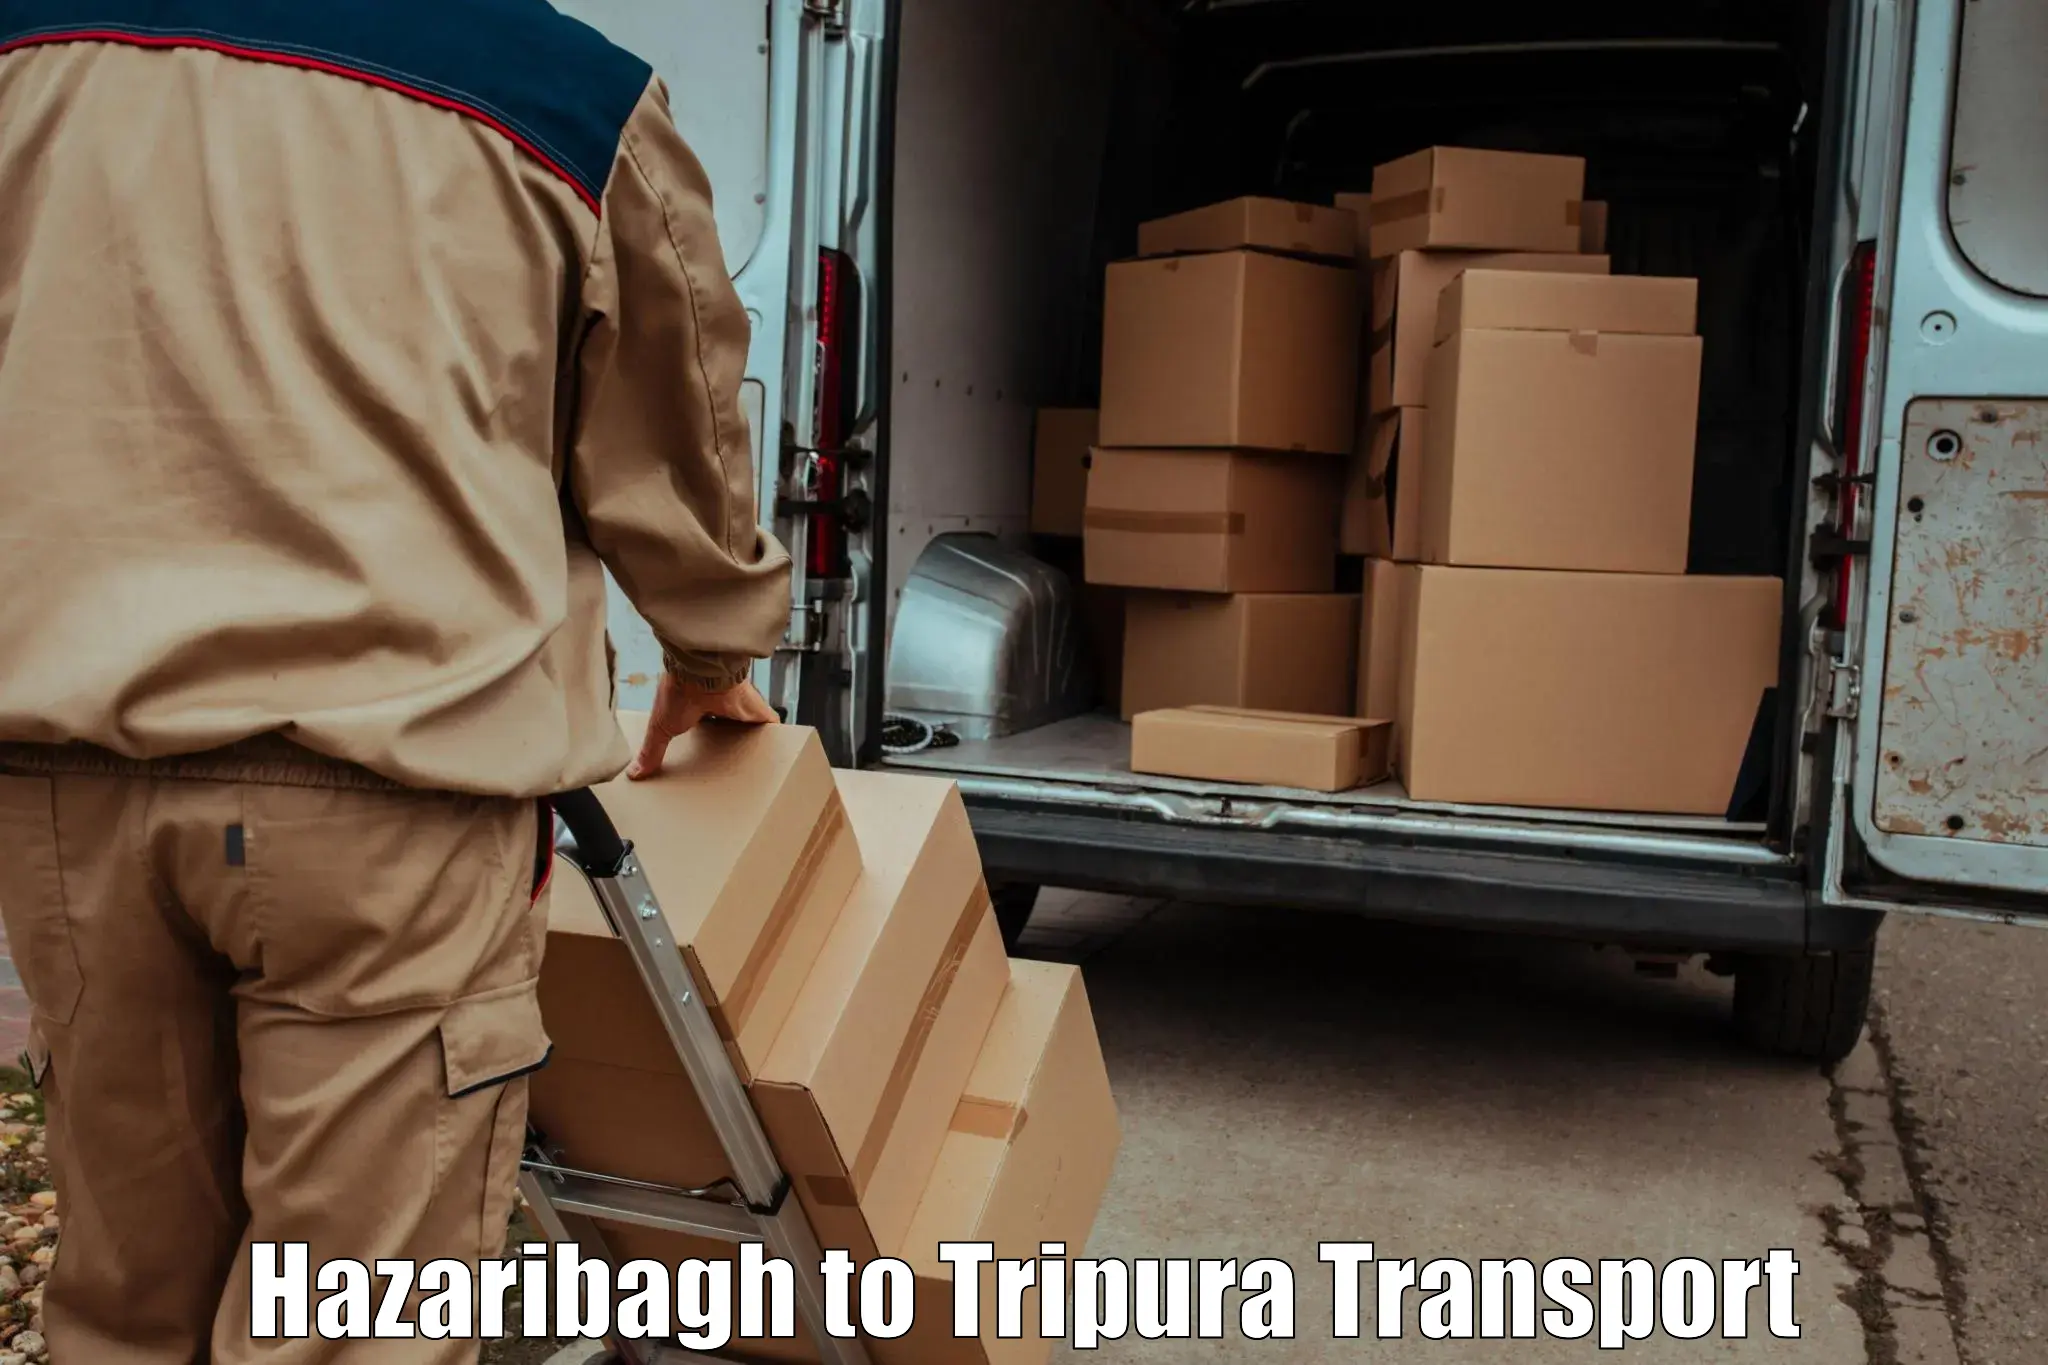 Interstate transport services Hazaribagh to Ambassa